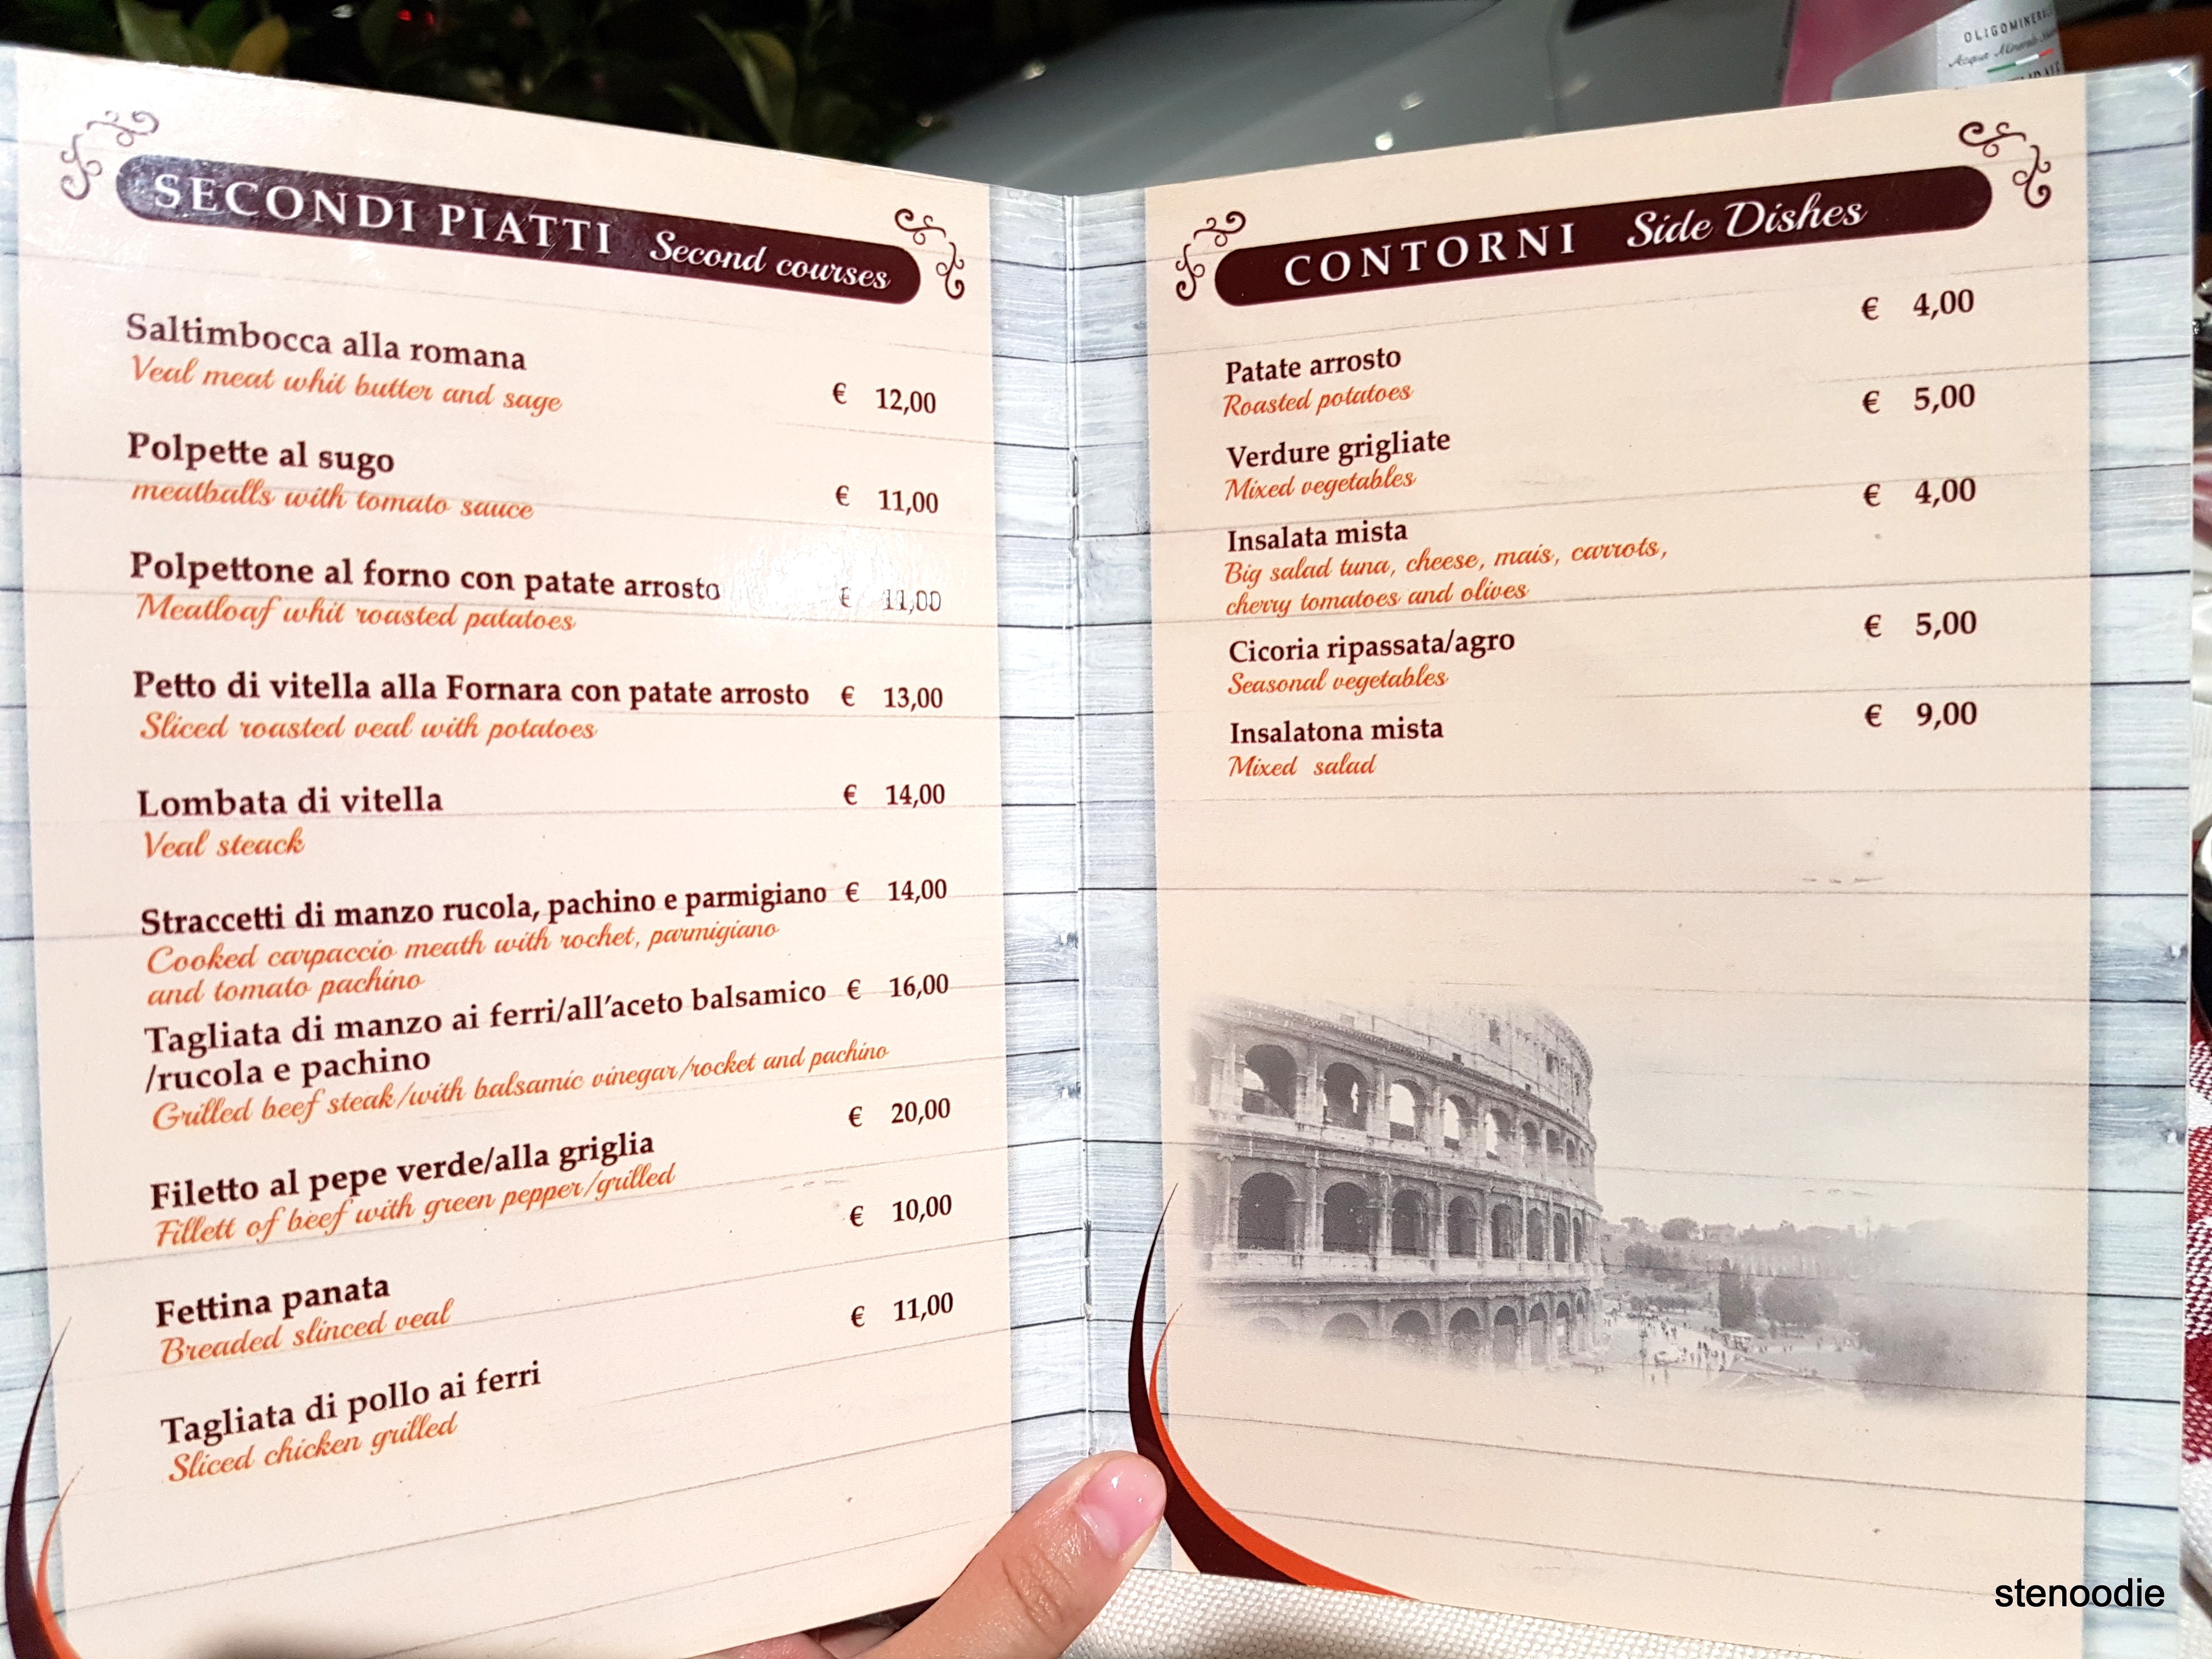 Trattoria Da Sora Gina menu and prices